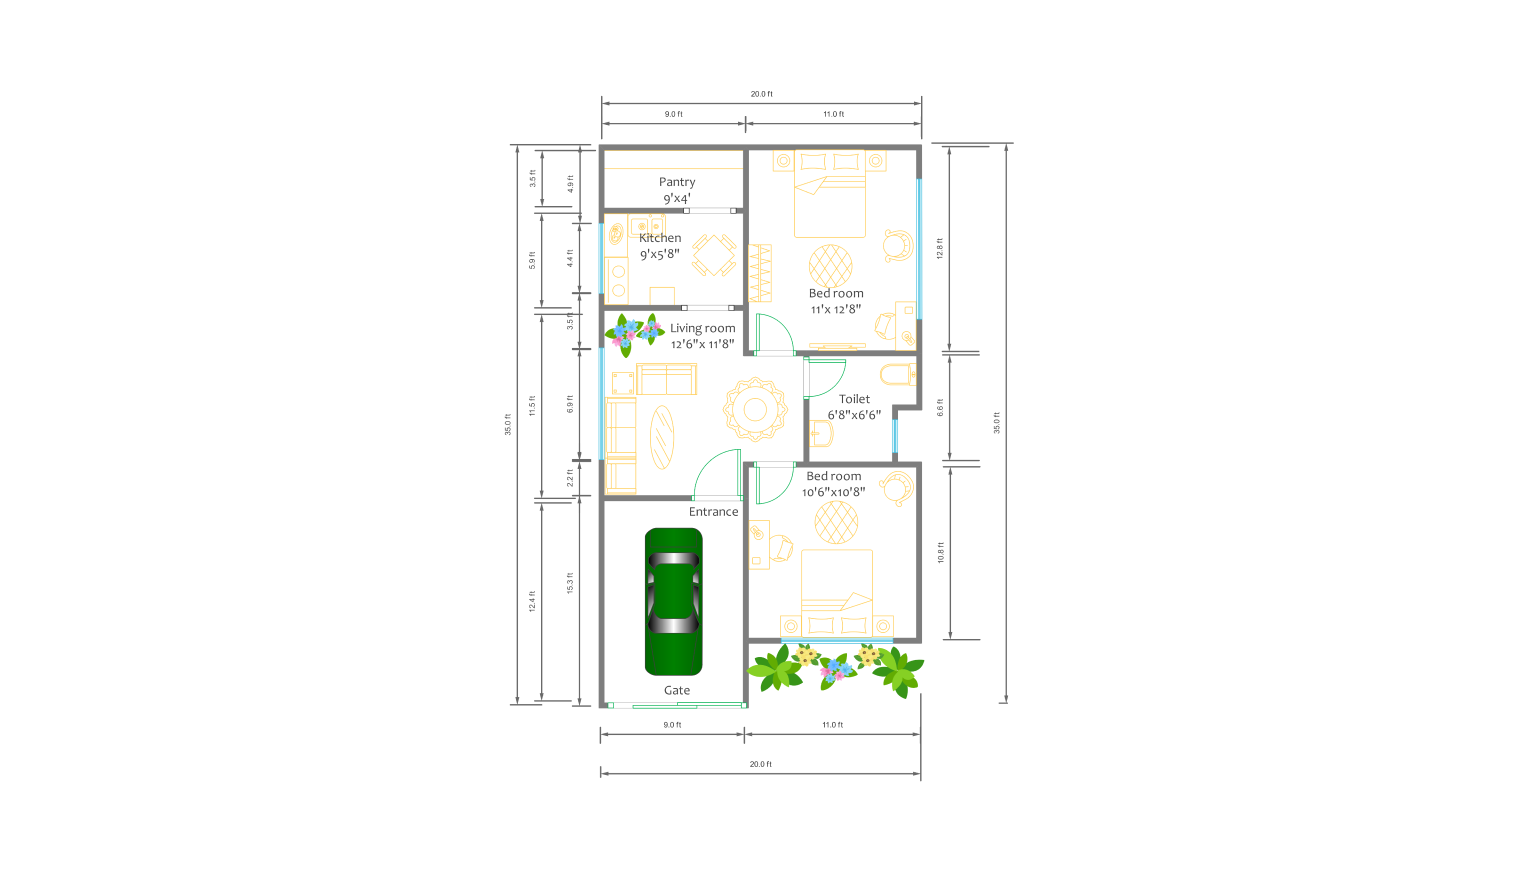 20x35 sq.ft Floor Plan for hospital